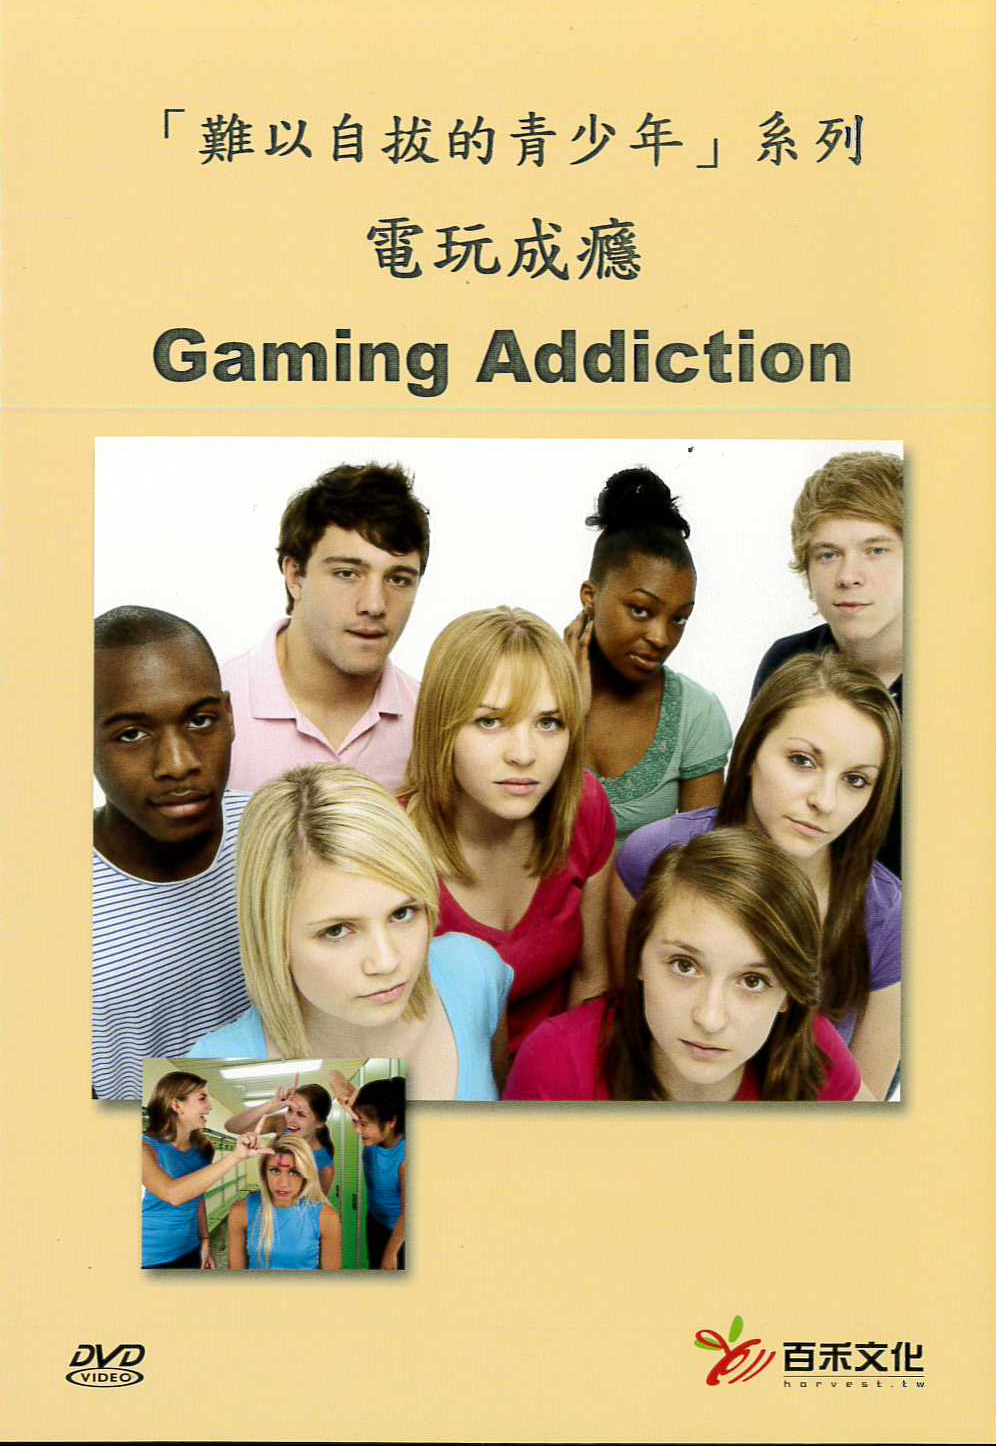 「難以自拔的青少年」系列 : 電玩成癮 = Insatiable Teens:Gaming Addiction